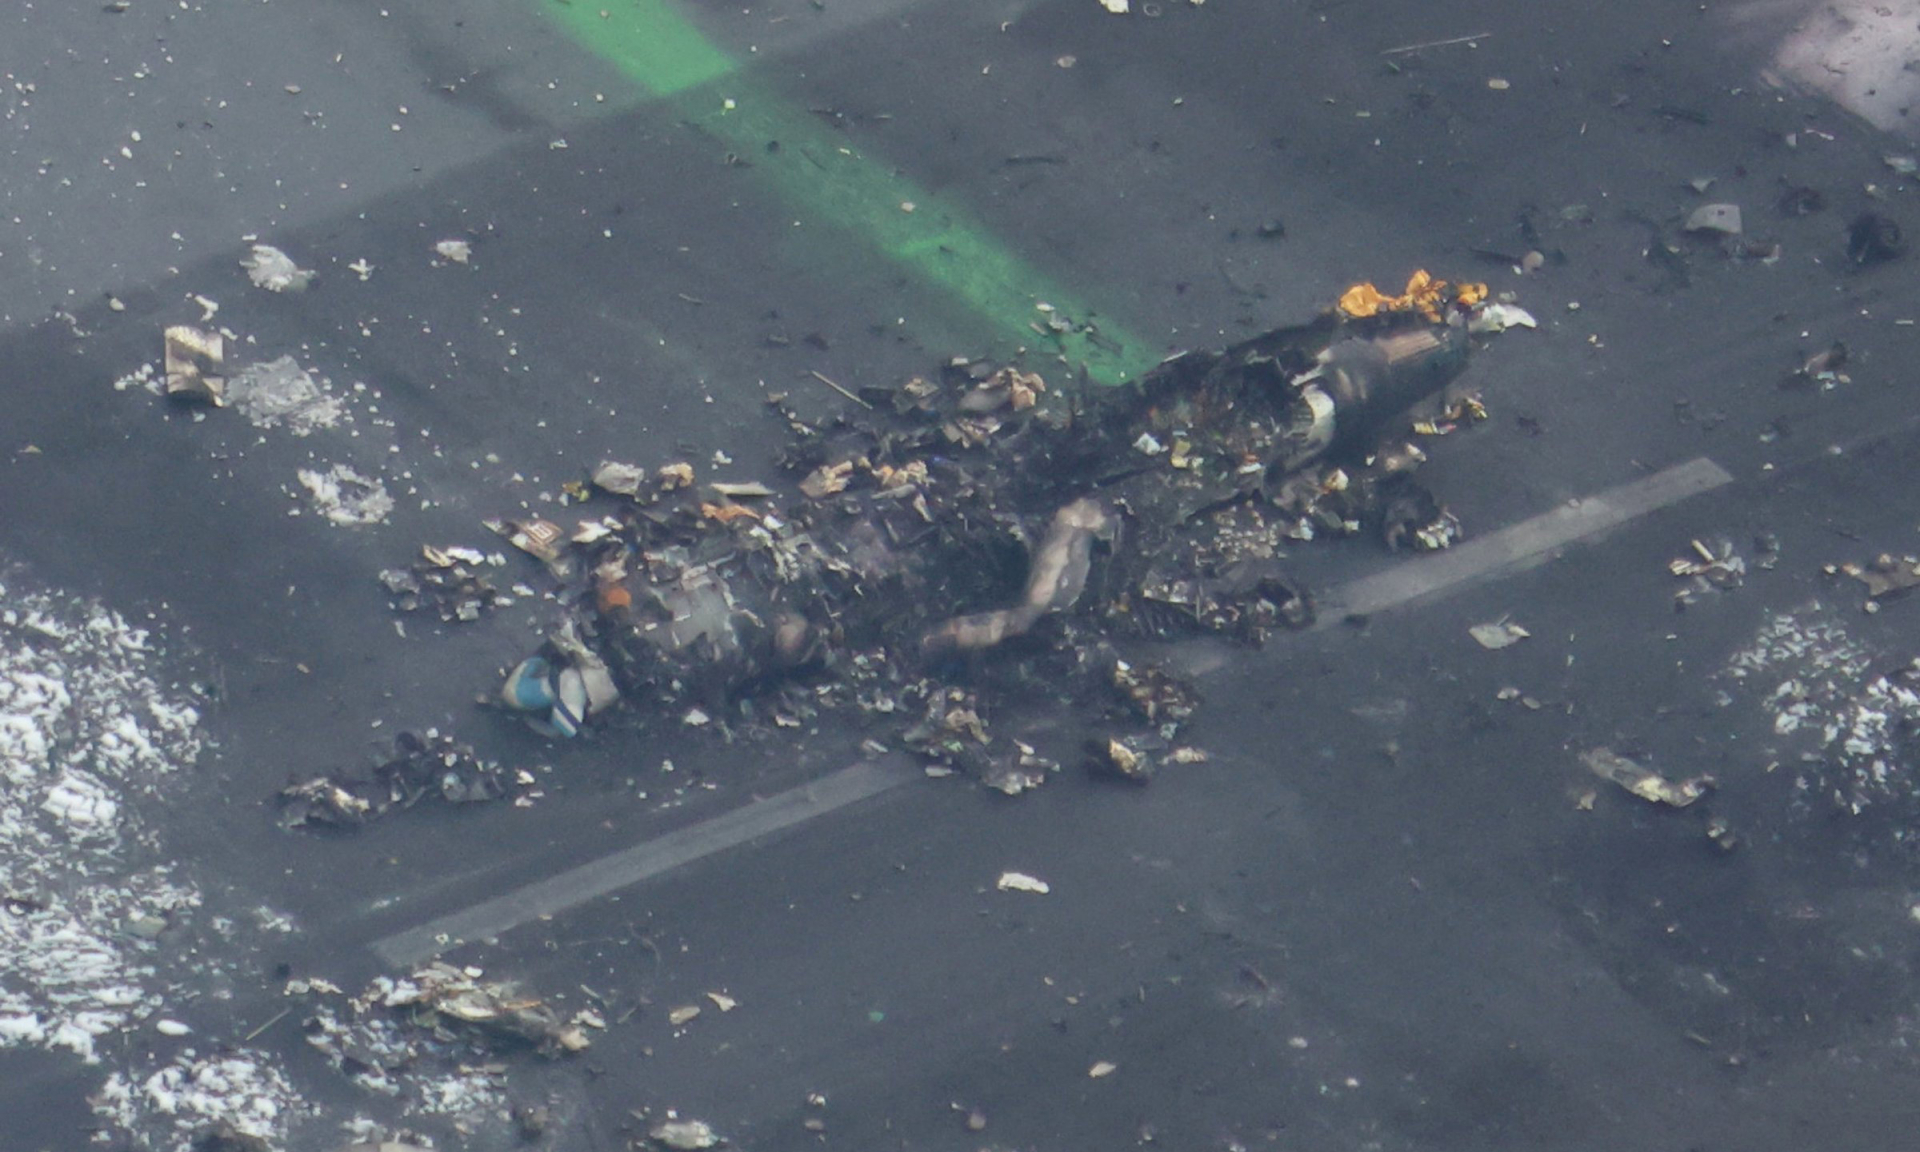 Chiếc máy bay làm nhiệm vụ đã cháy rụi, xác của 5 người trên đó được tìm thấy ở hiện trường